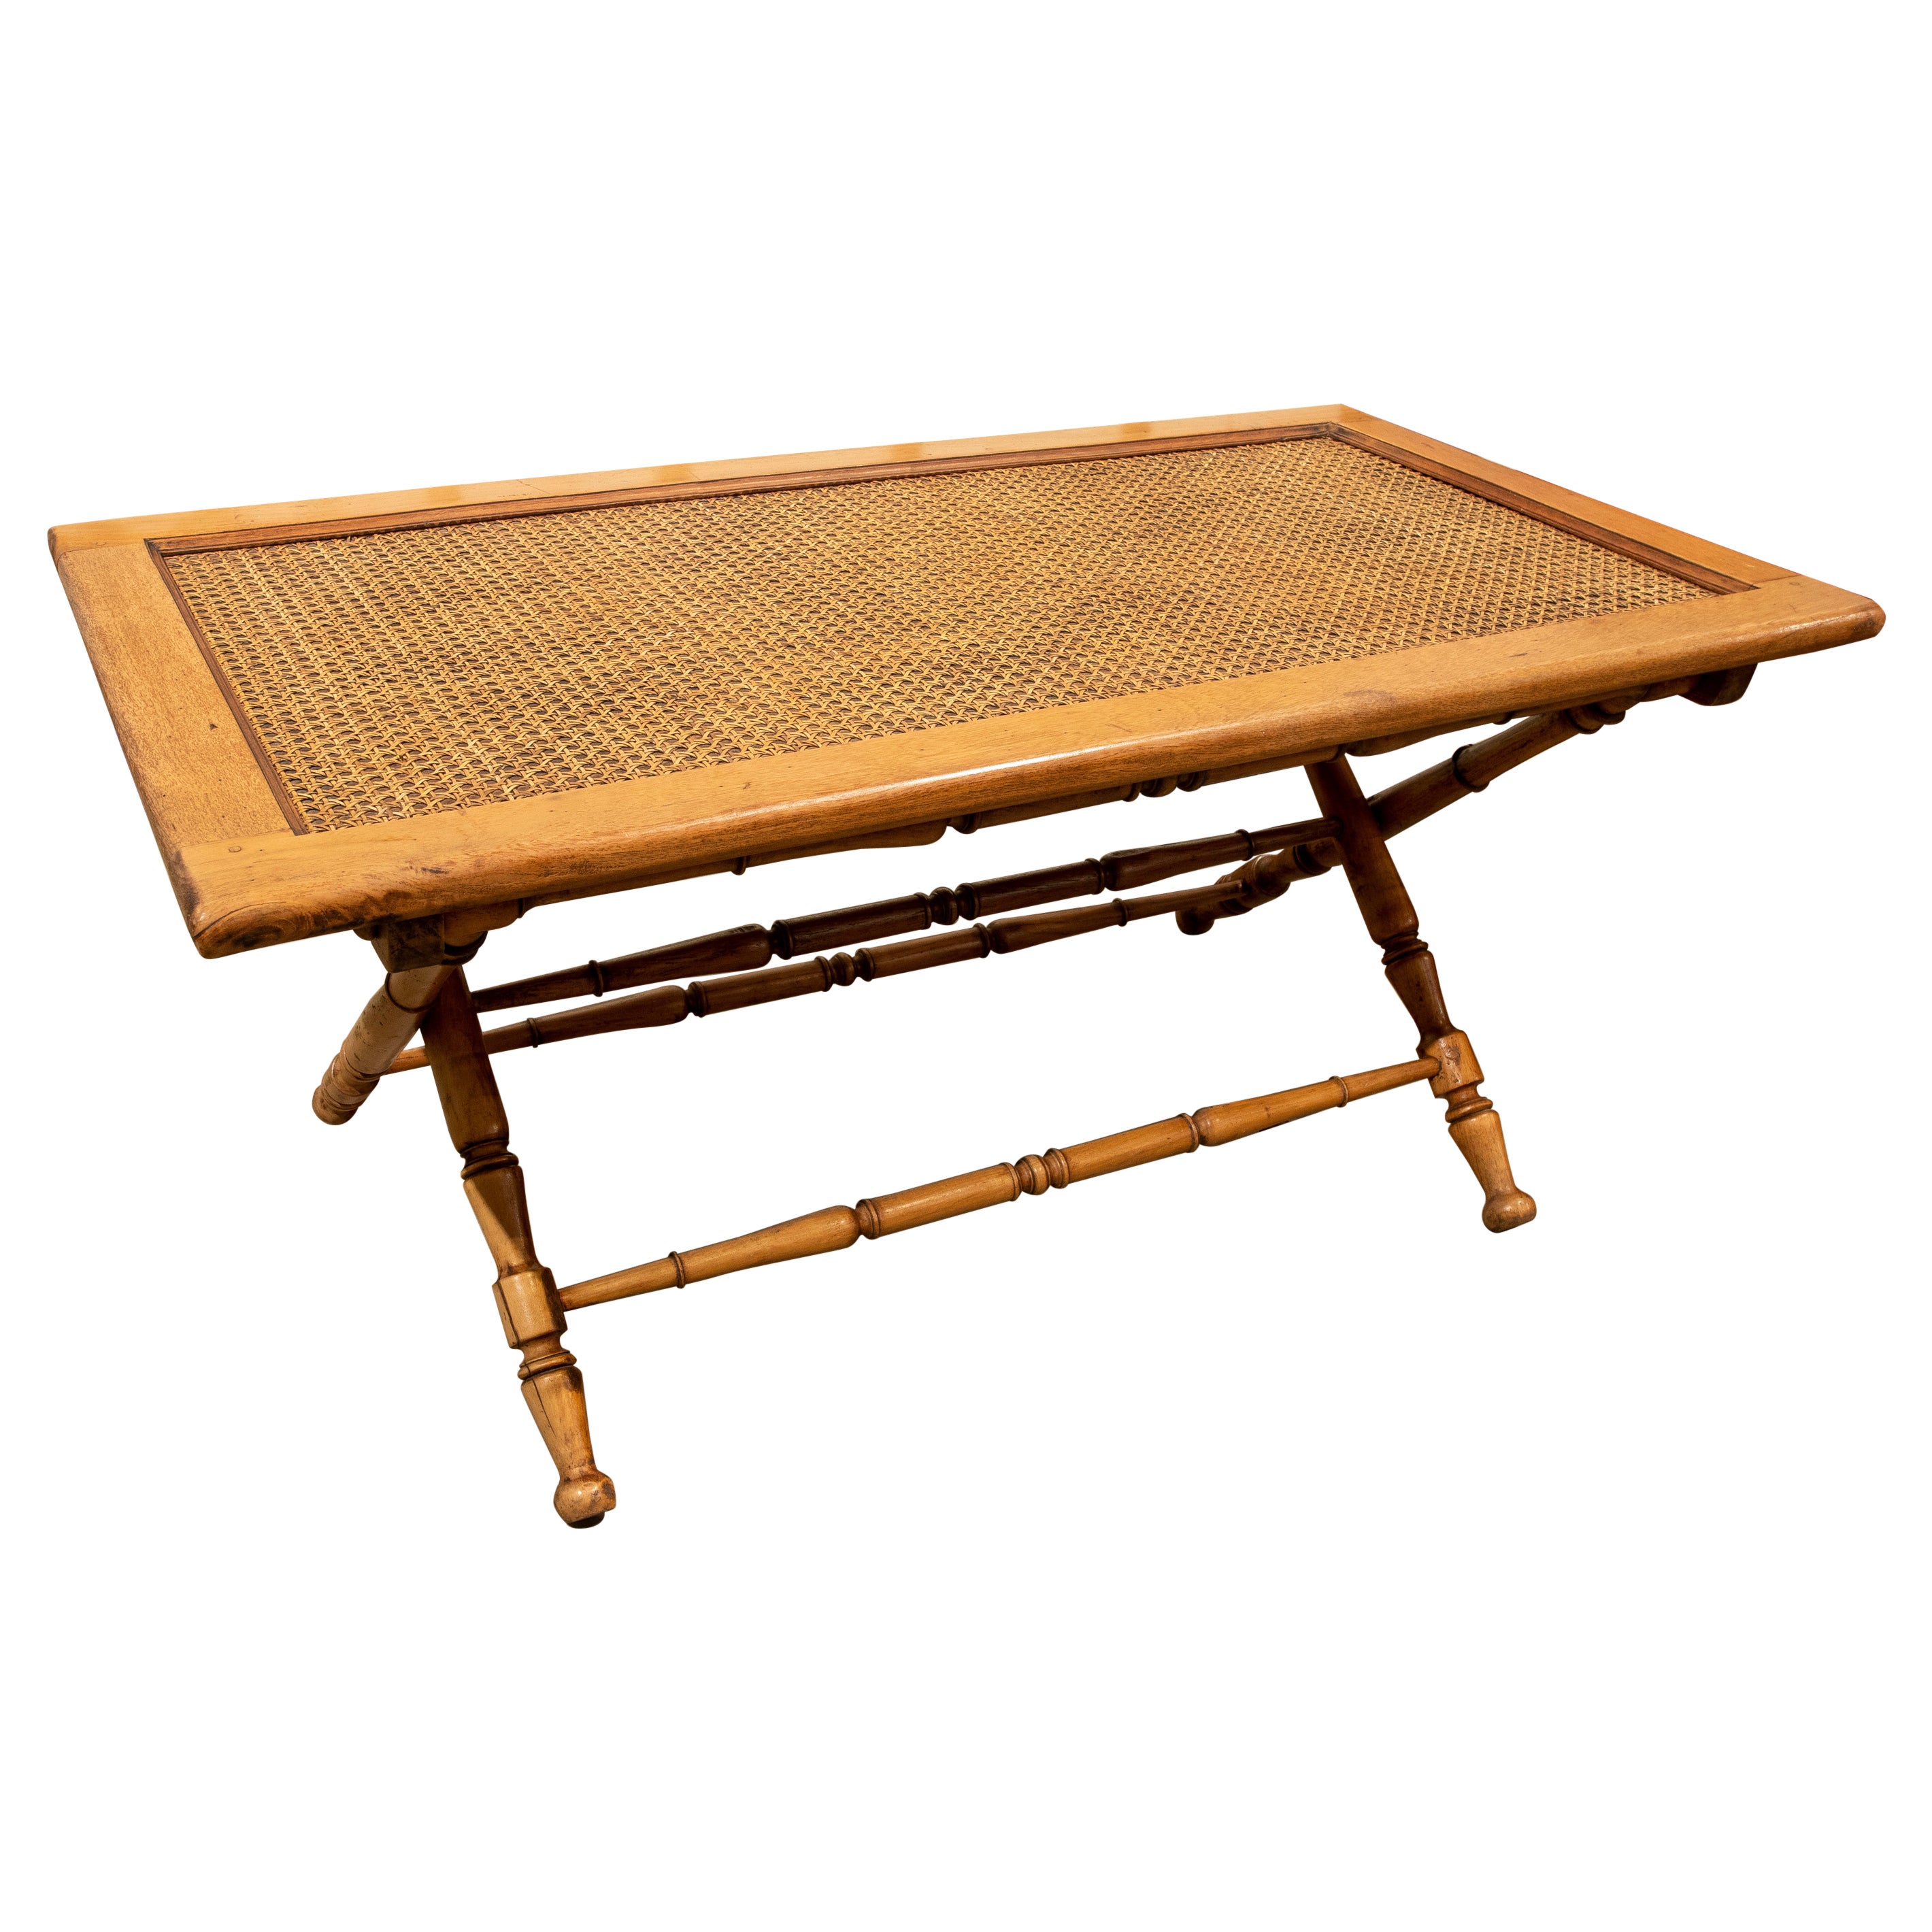 Table basse en bambou imitation bois des années 1970 avec table pliante en raphia 